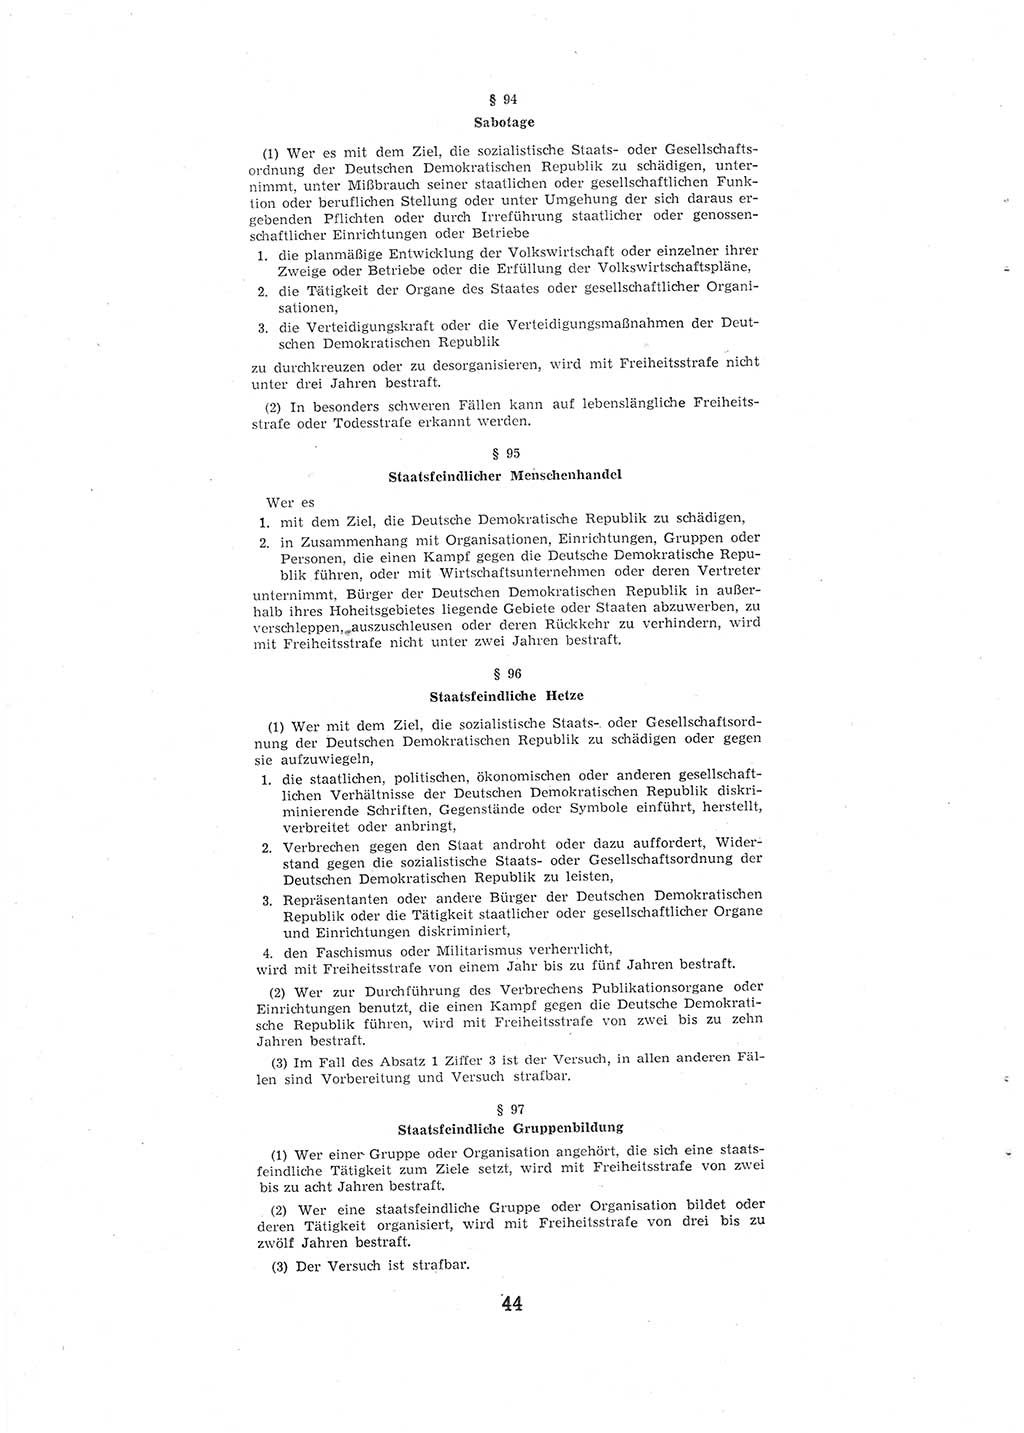 Entwurf des Strafgesetzbuches (StGB) der Deutschen Demokratischen Republik (DDR) 1967, Seite 44 (Entw. StGB DDR 1967, S. 44)